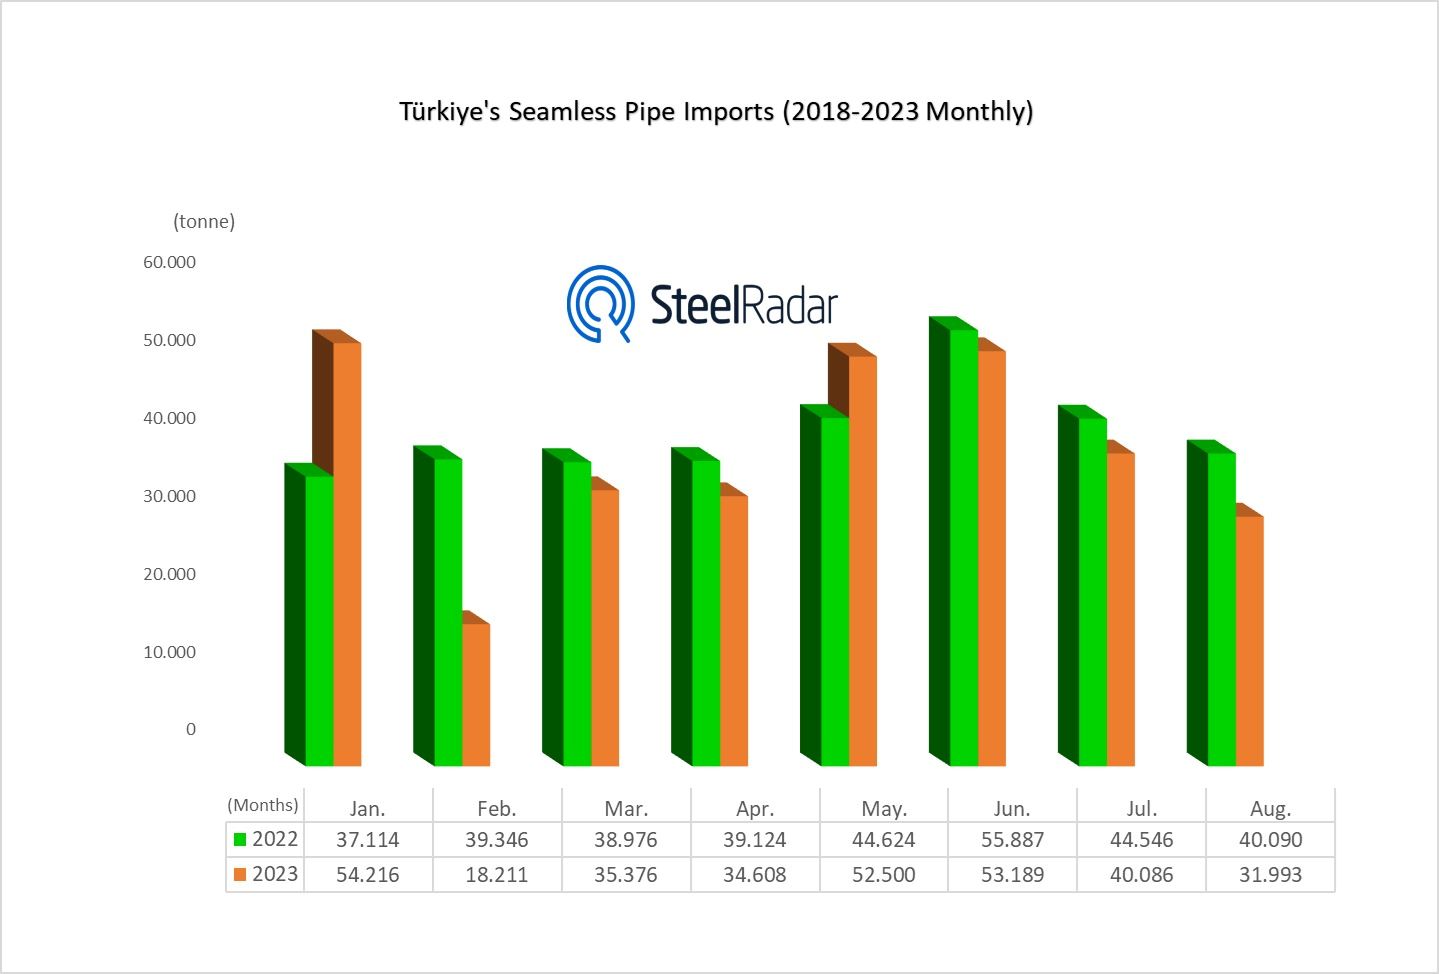 Türkiye's seamless steel pipe imports decreased in August